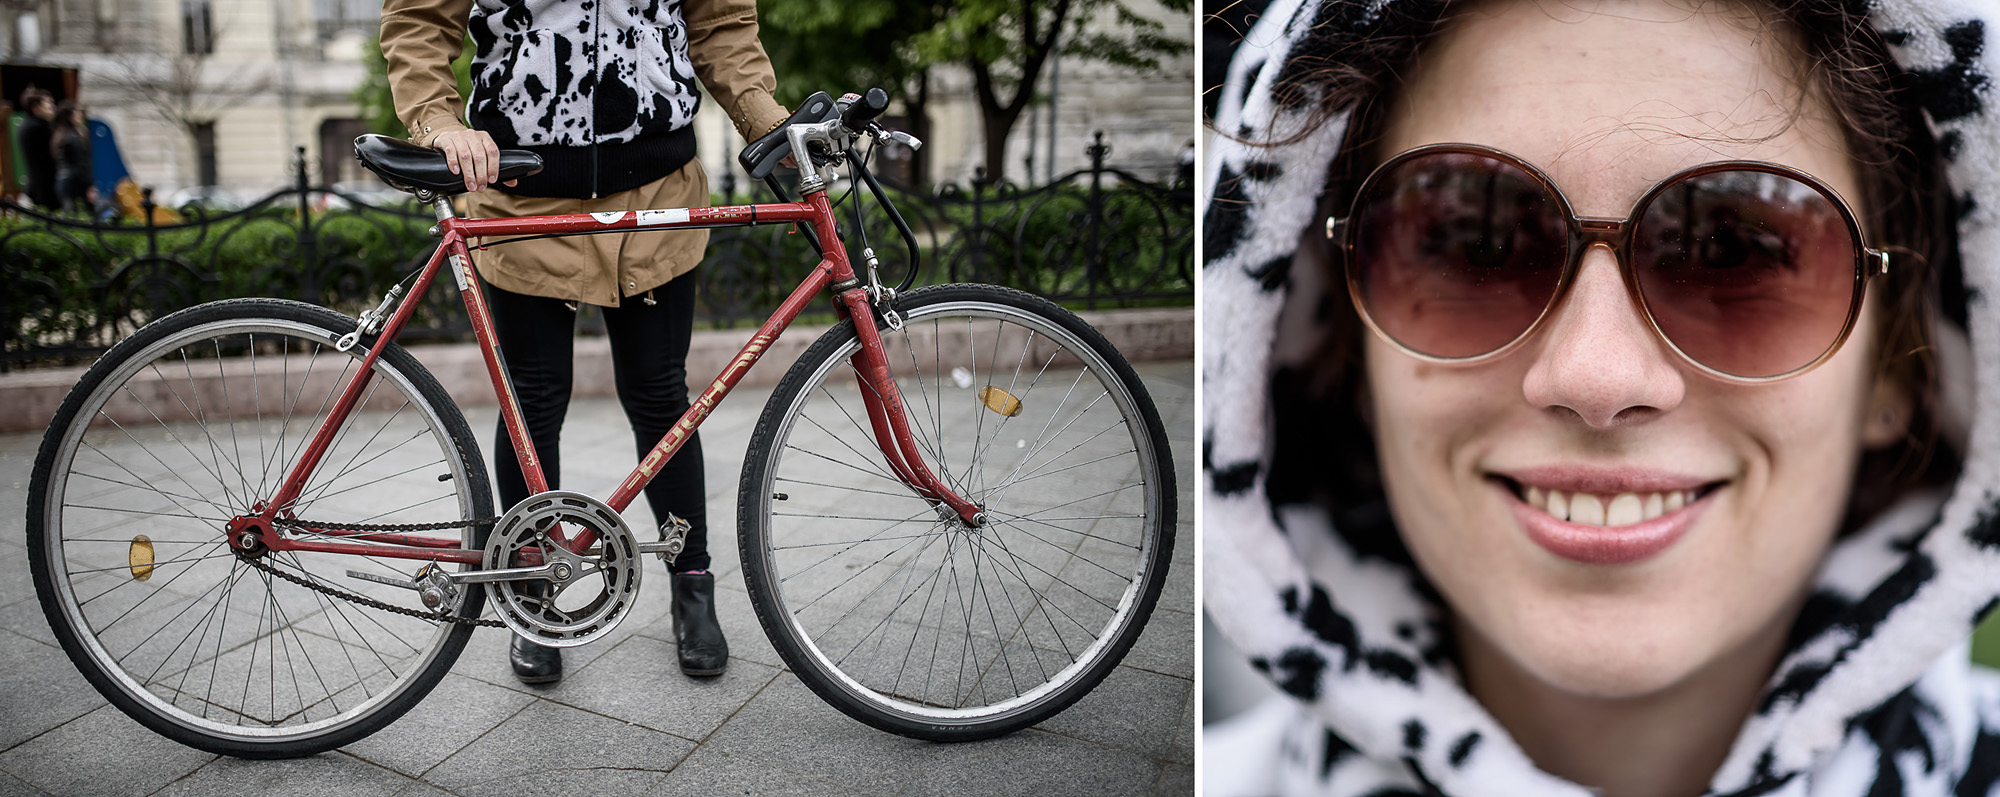 A biciklifüggők pont úgy hasonlítanak a bringájukra, mint a kutyások a kutyájukra